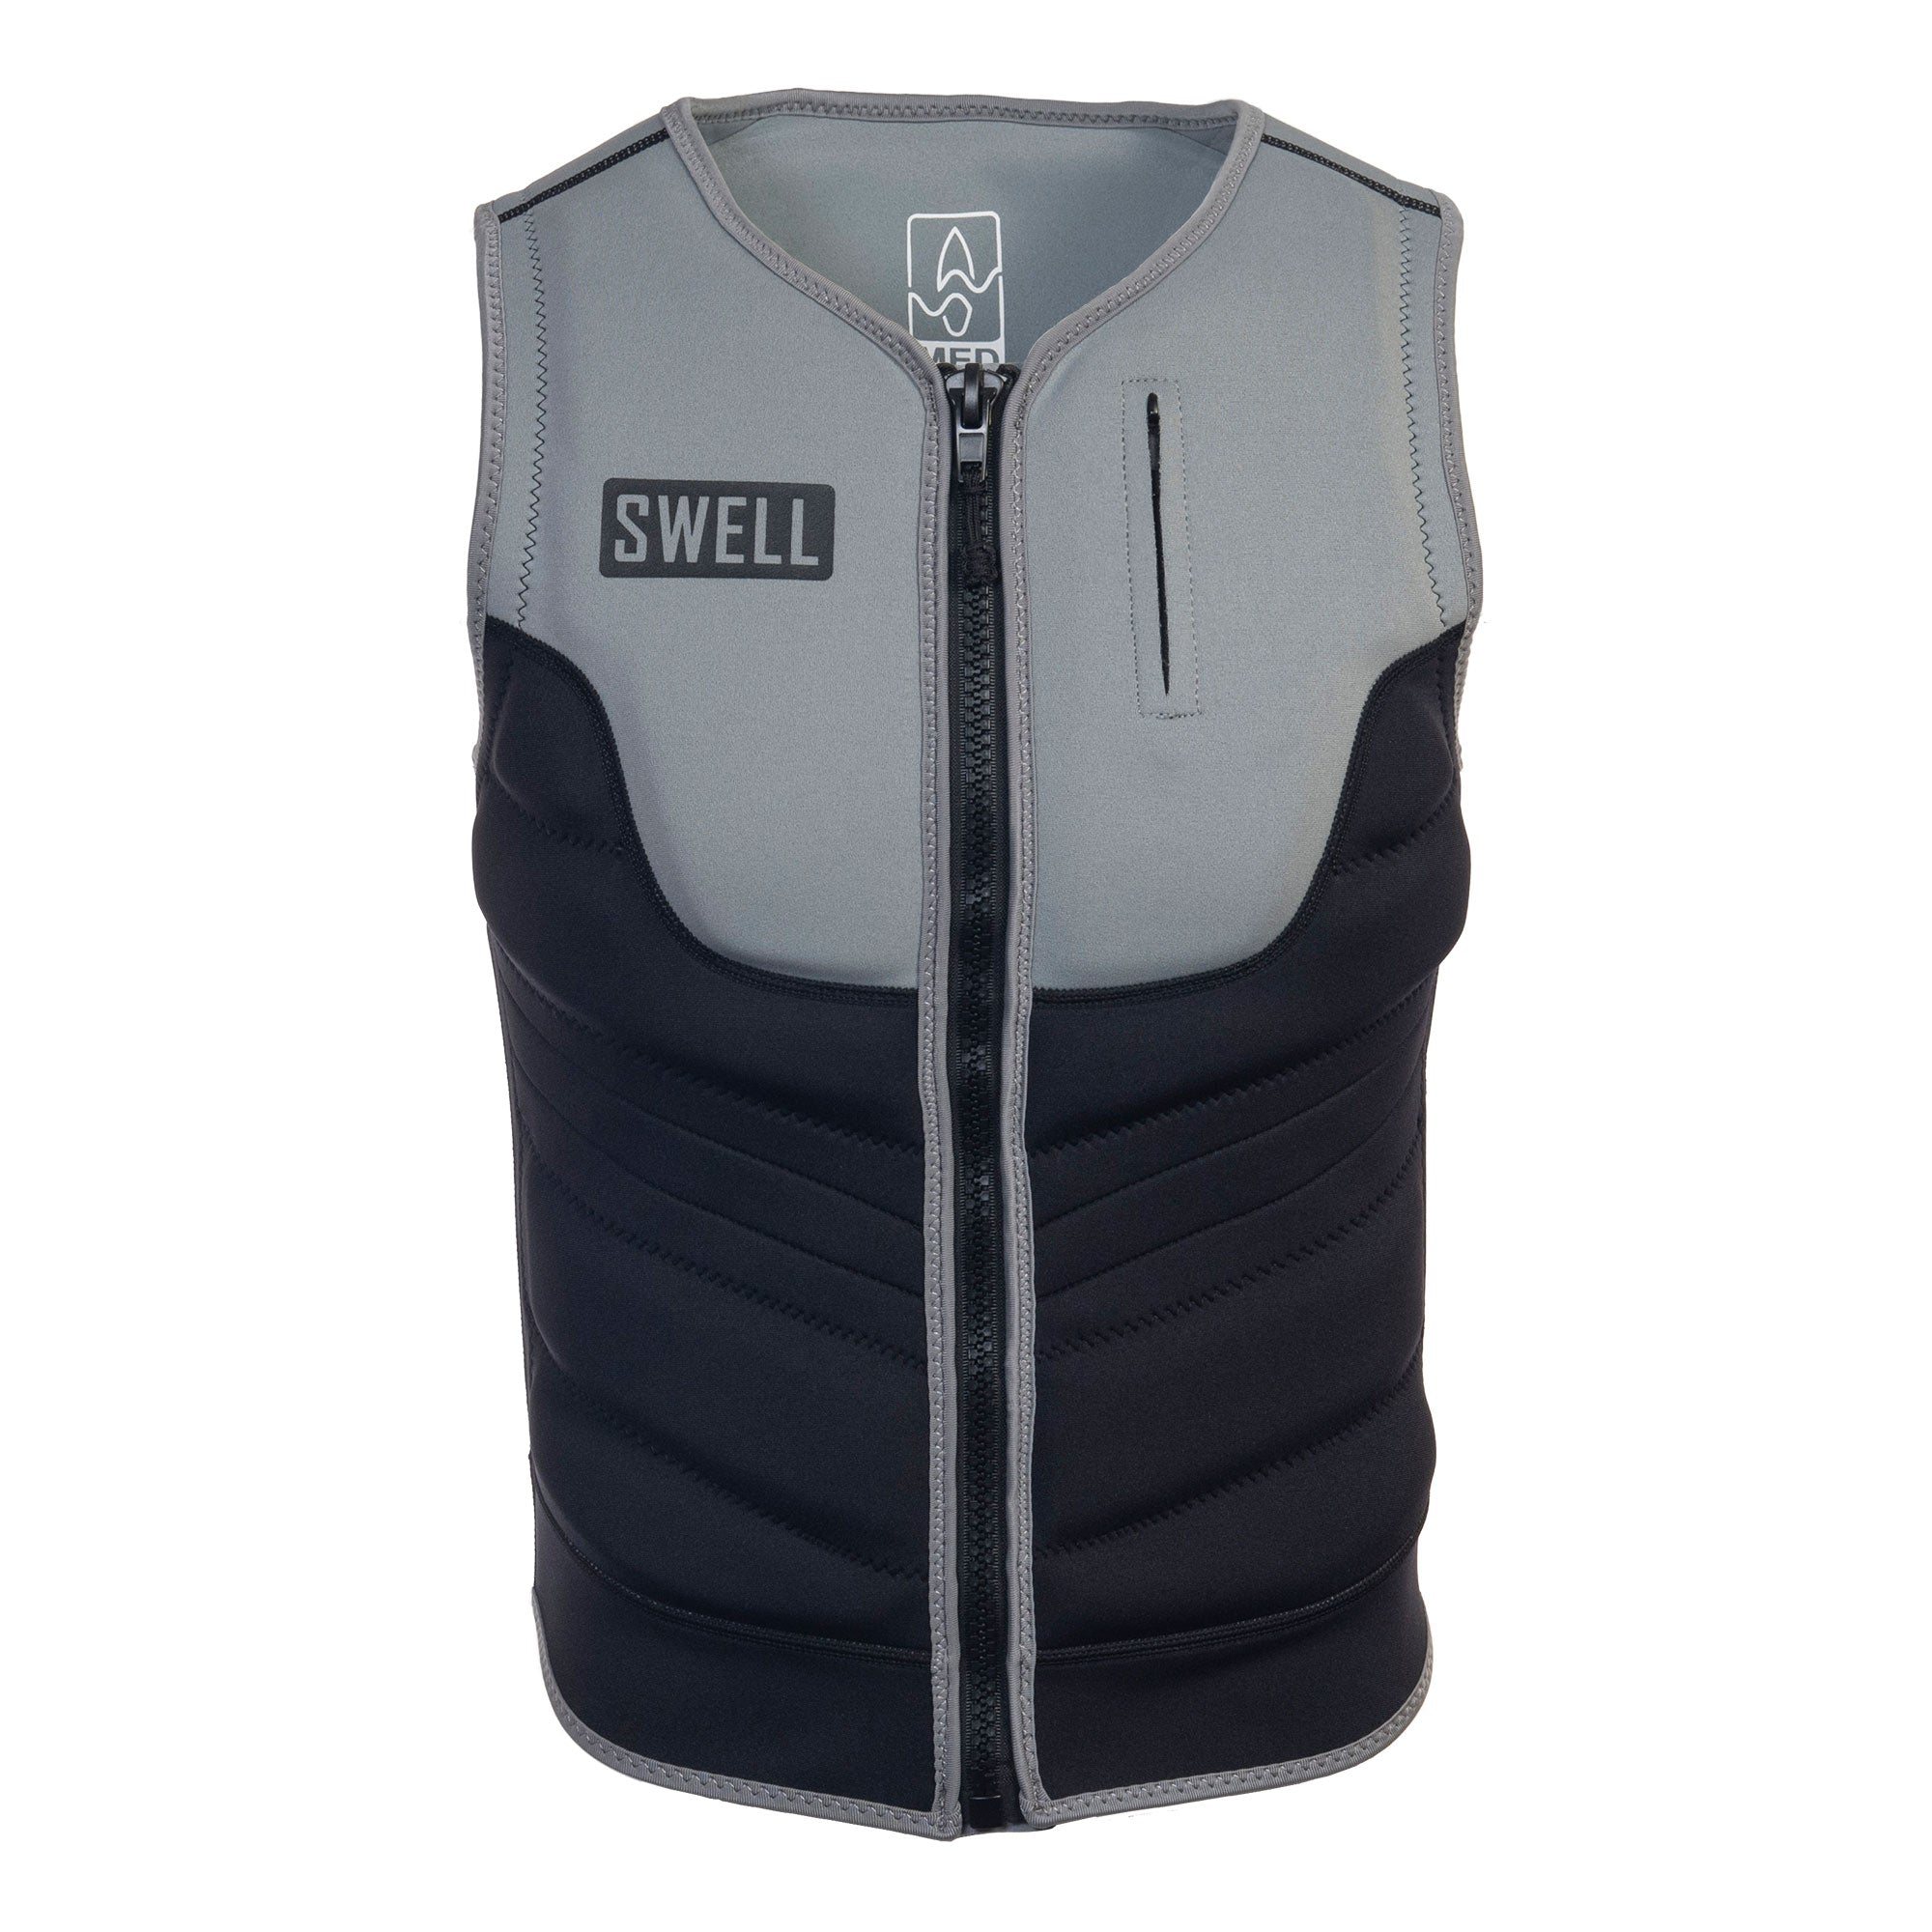 SWELL Comp Vest - Men's Carbon -  Neoprene Jacket *LIMITED RELEASE COLOR*